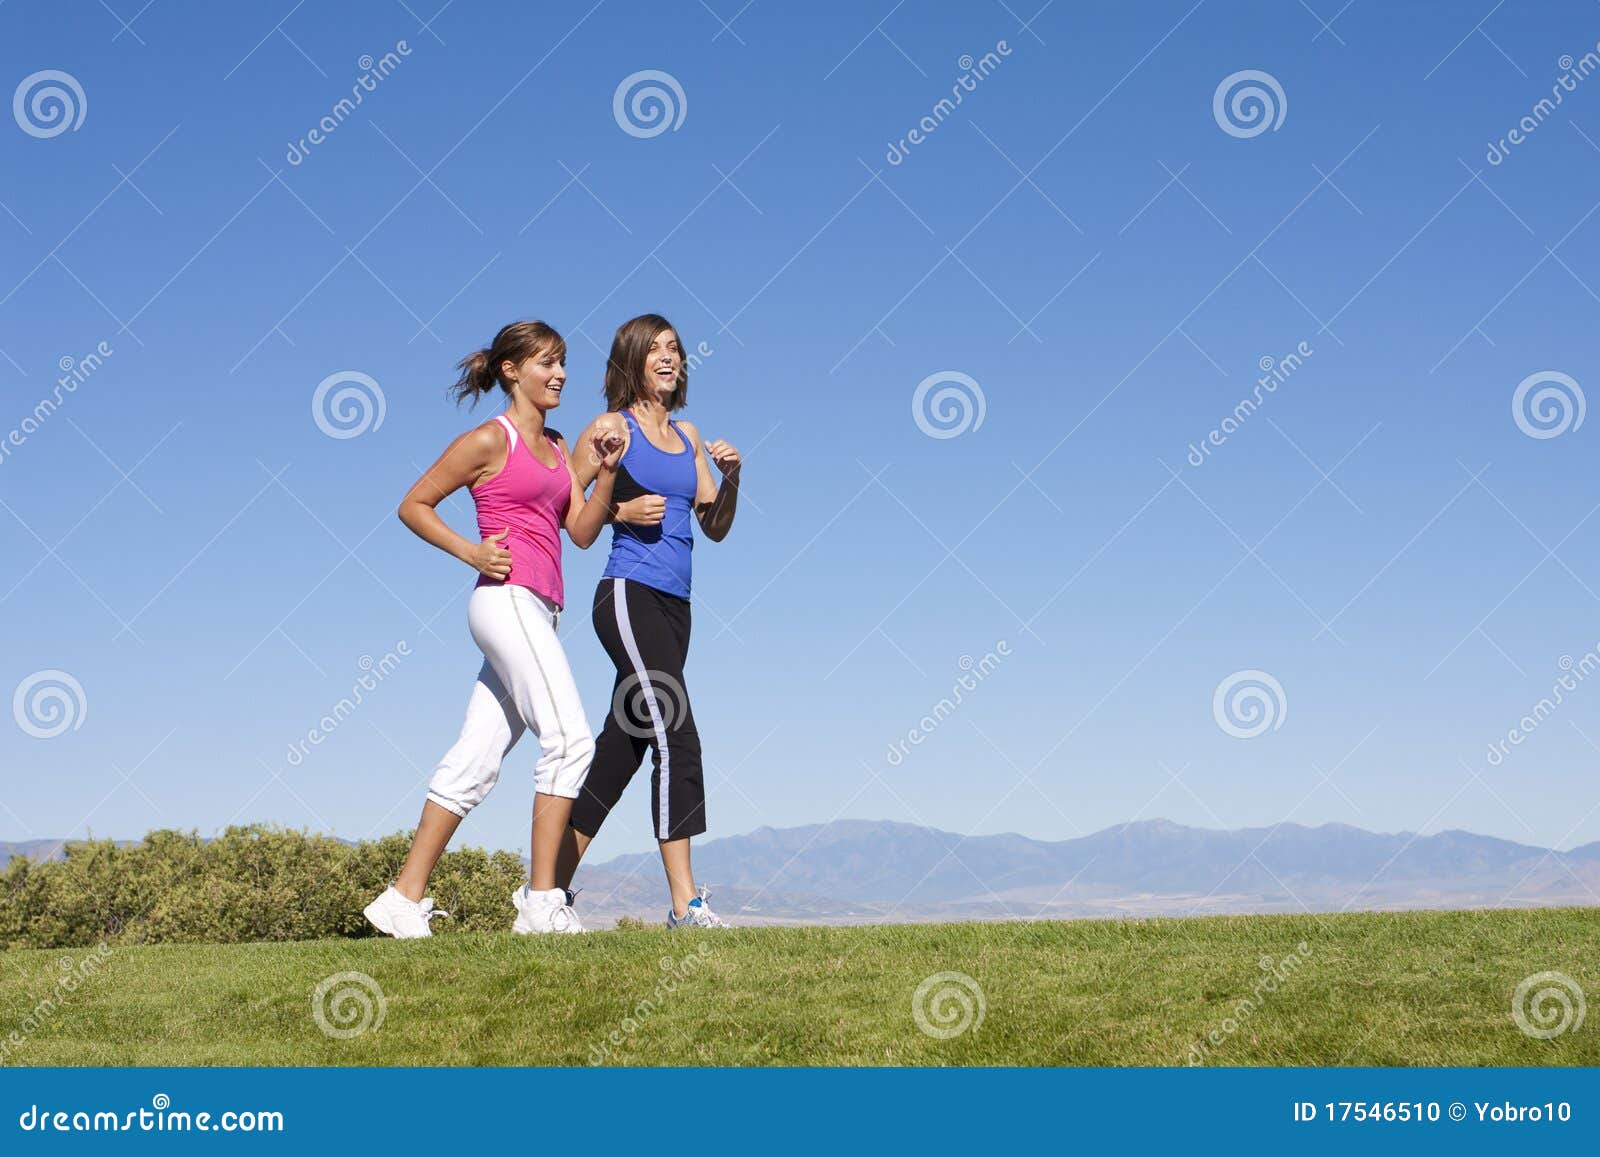 women walking, jogging & exercise